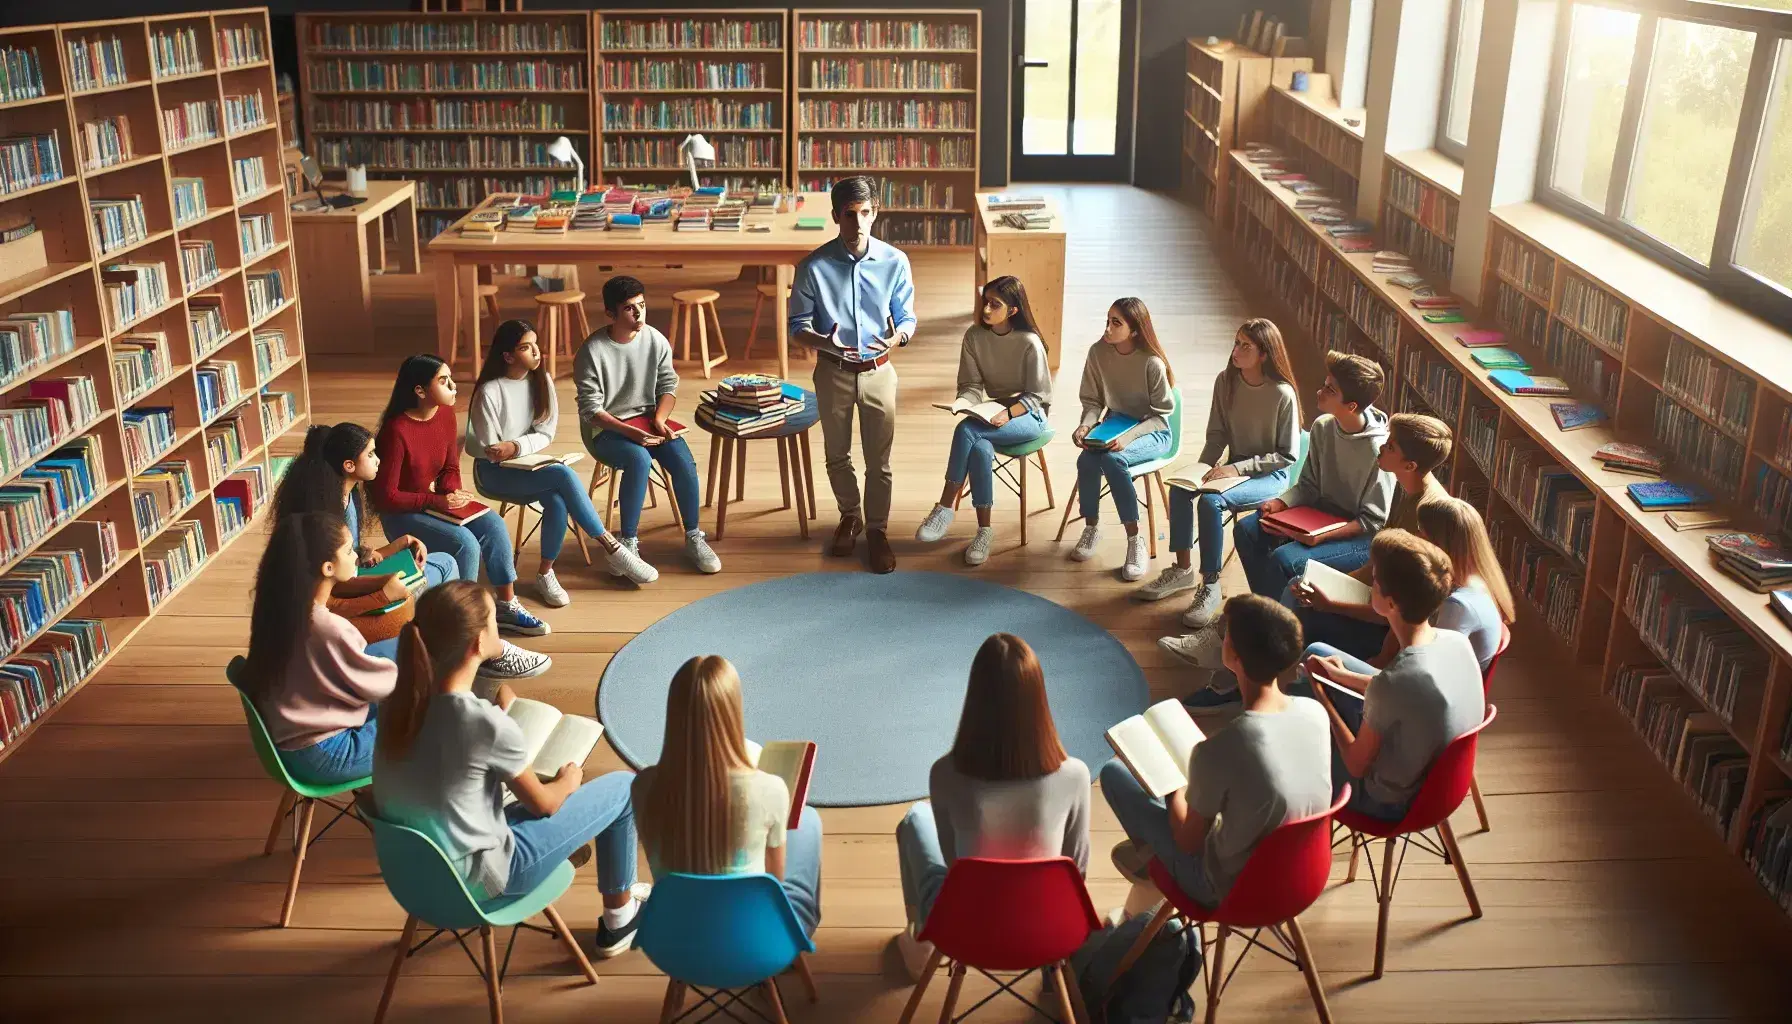 Grupo diverso de estudiantes atentos en biblioteca escolar con profesor facilitando una discusión, rodeados de estantes llenos de libros y luz natural.